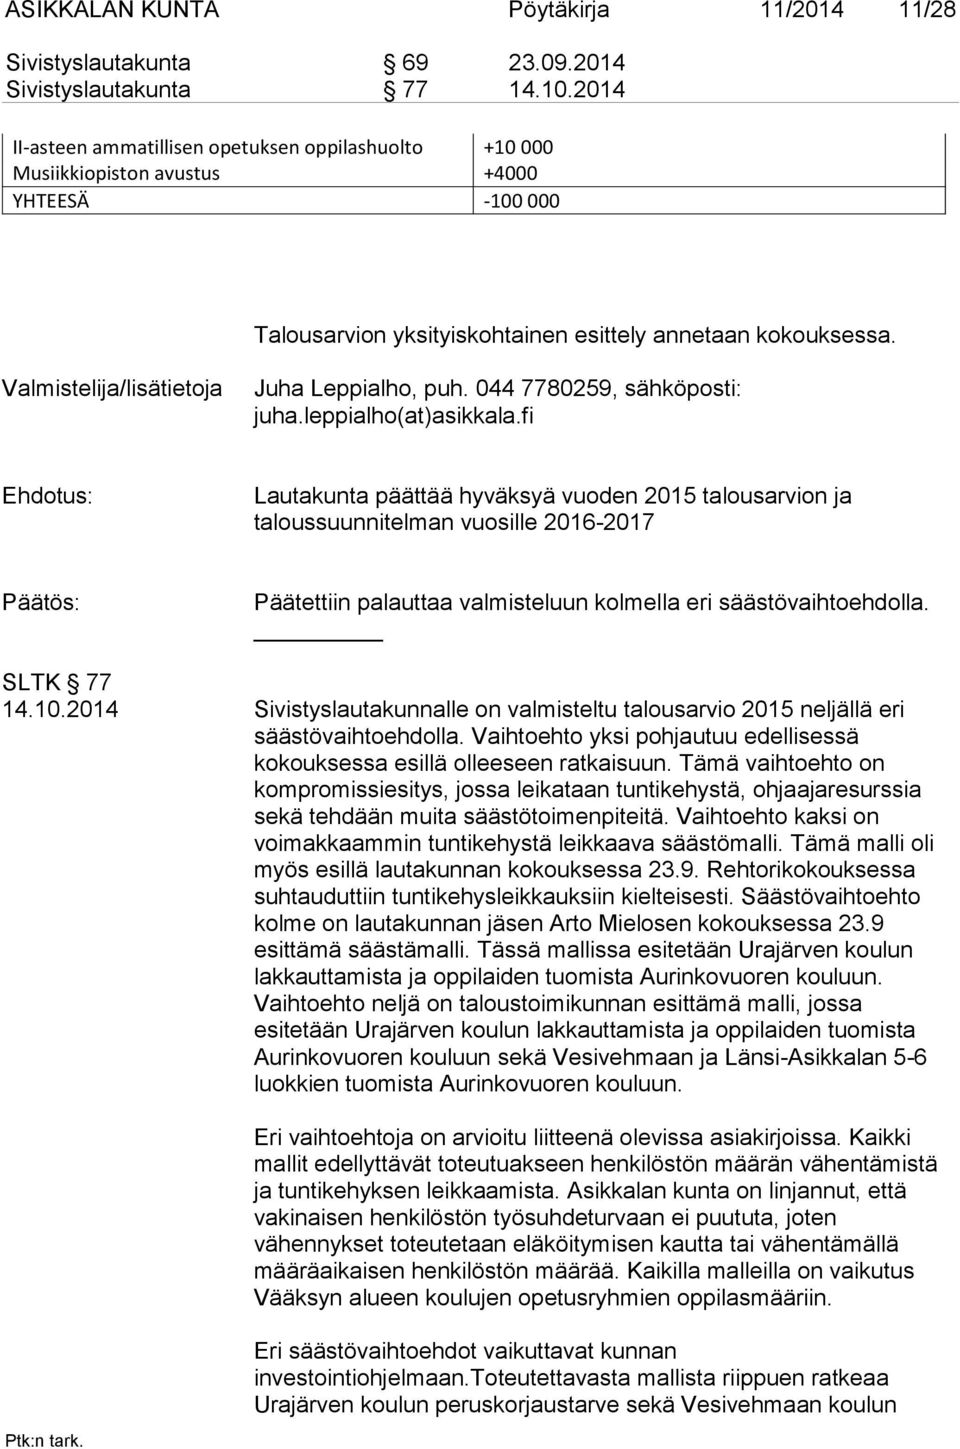 Valmistelija/lisätietoja Juha Leppialho, puh. 044 7780259, sähköposti: juha.leppialho(at)asikkala.